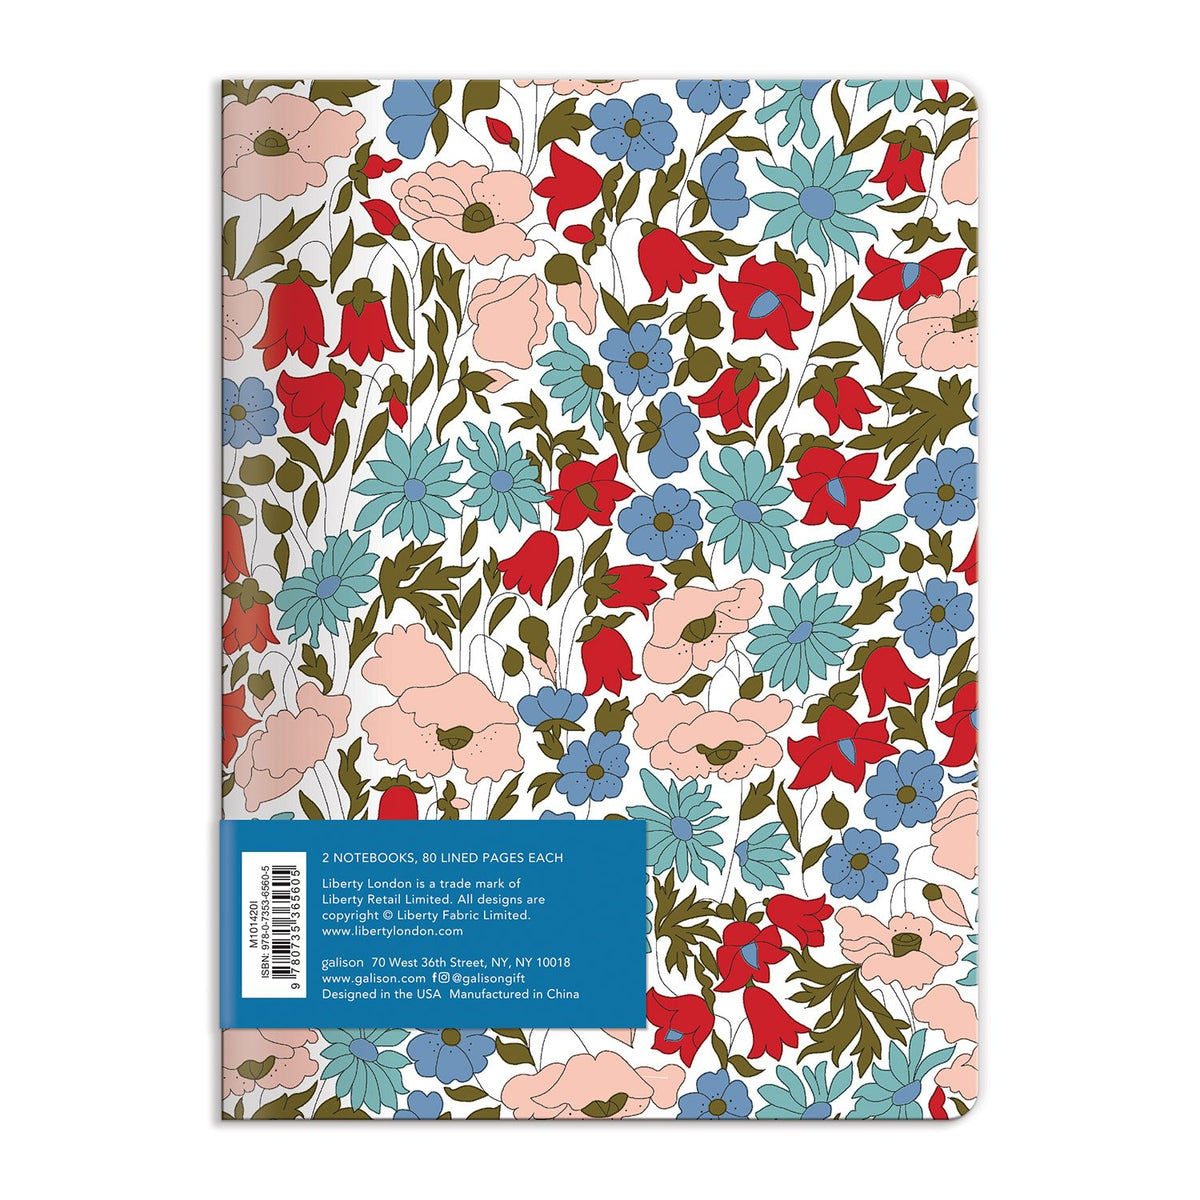 køber udvikling Betjening mulig Liberty London Floral Writers Notebook Set | Galison